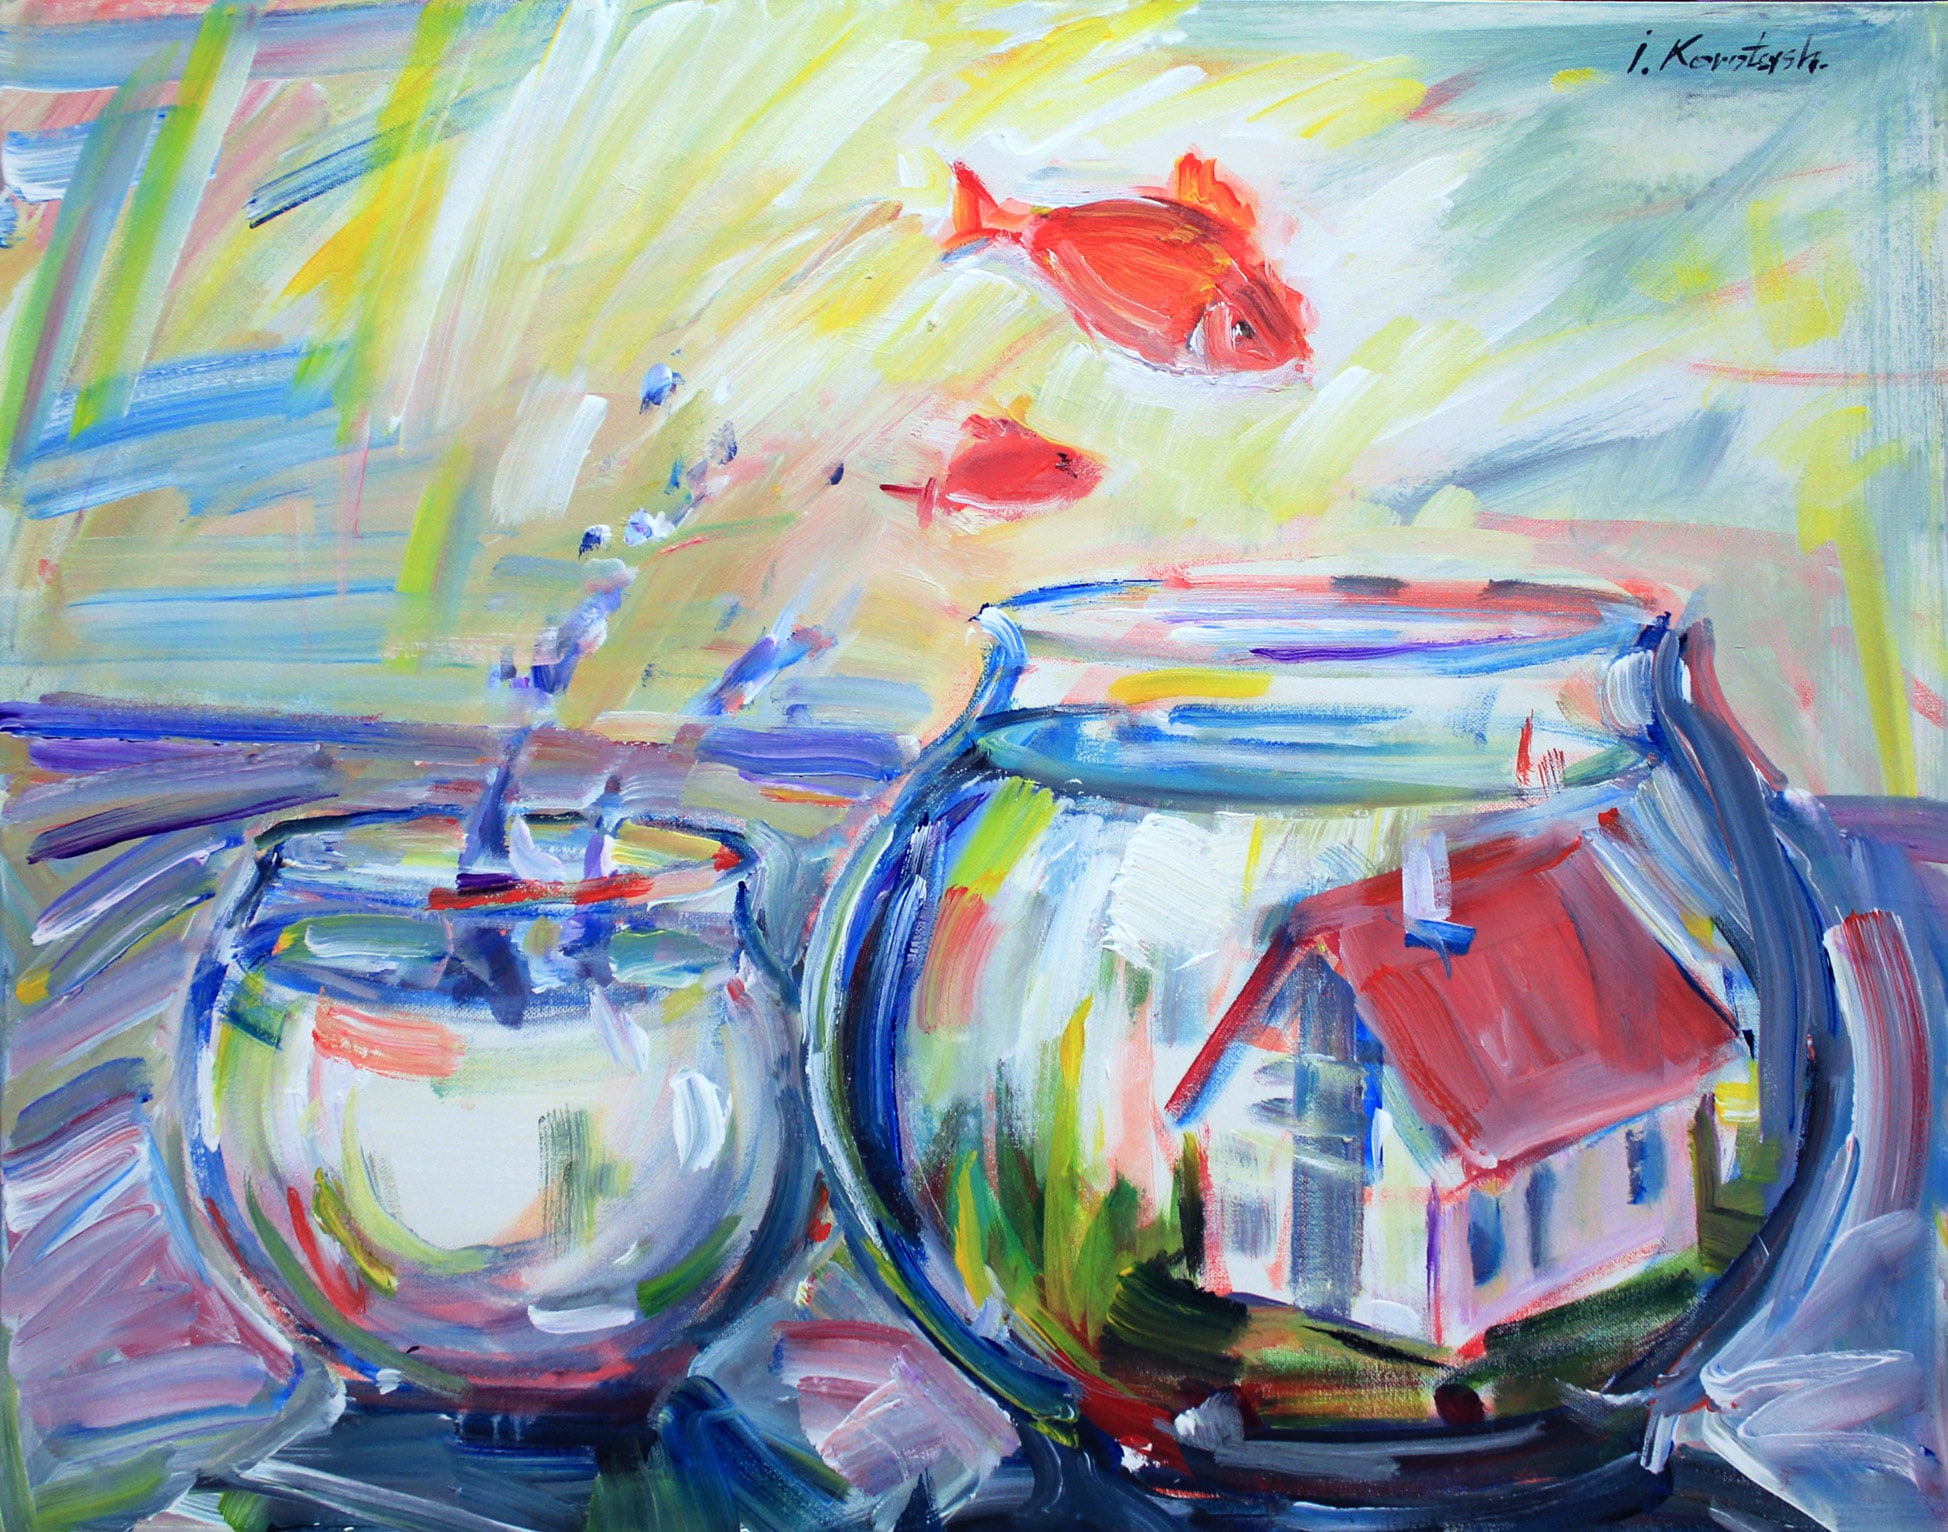 Fishbowl artwork